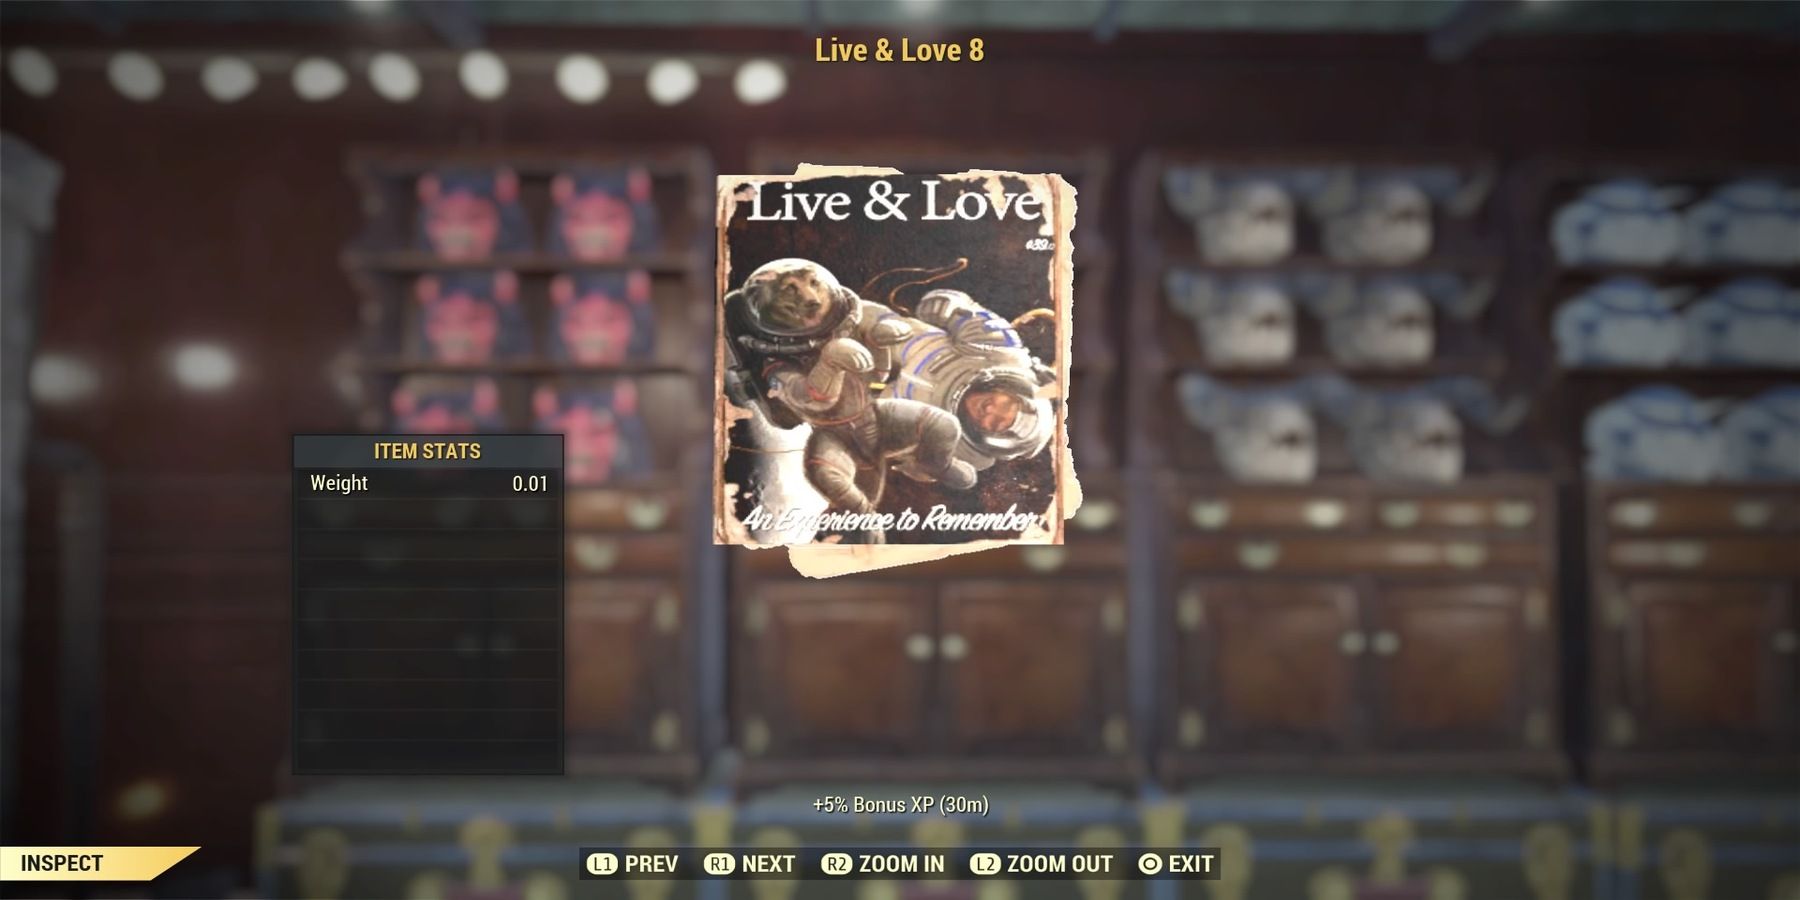 Live & Love Magazine in Fallout 76